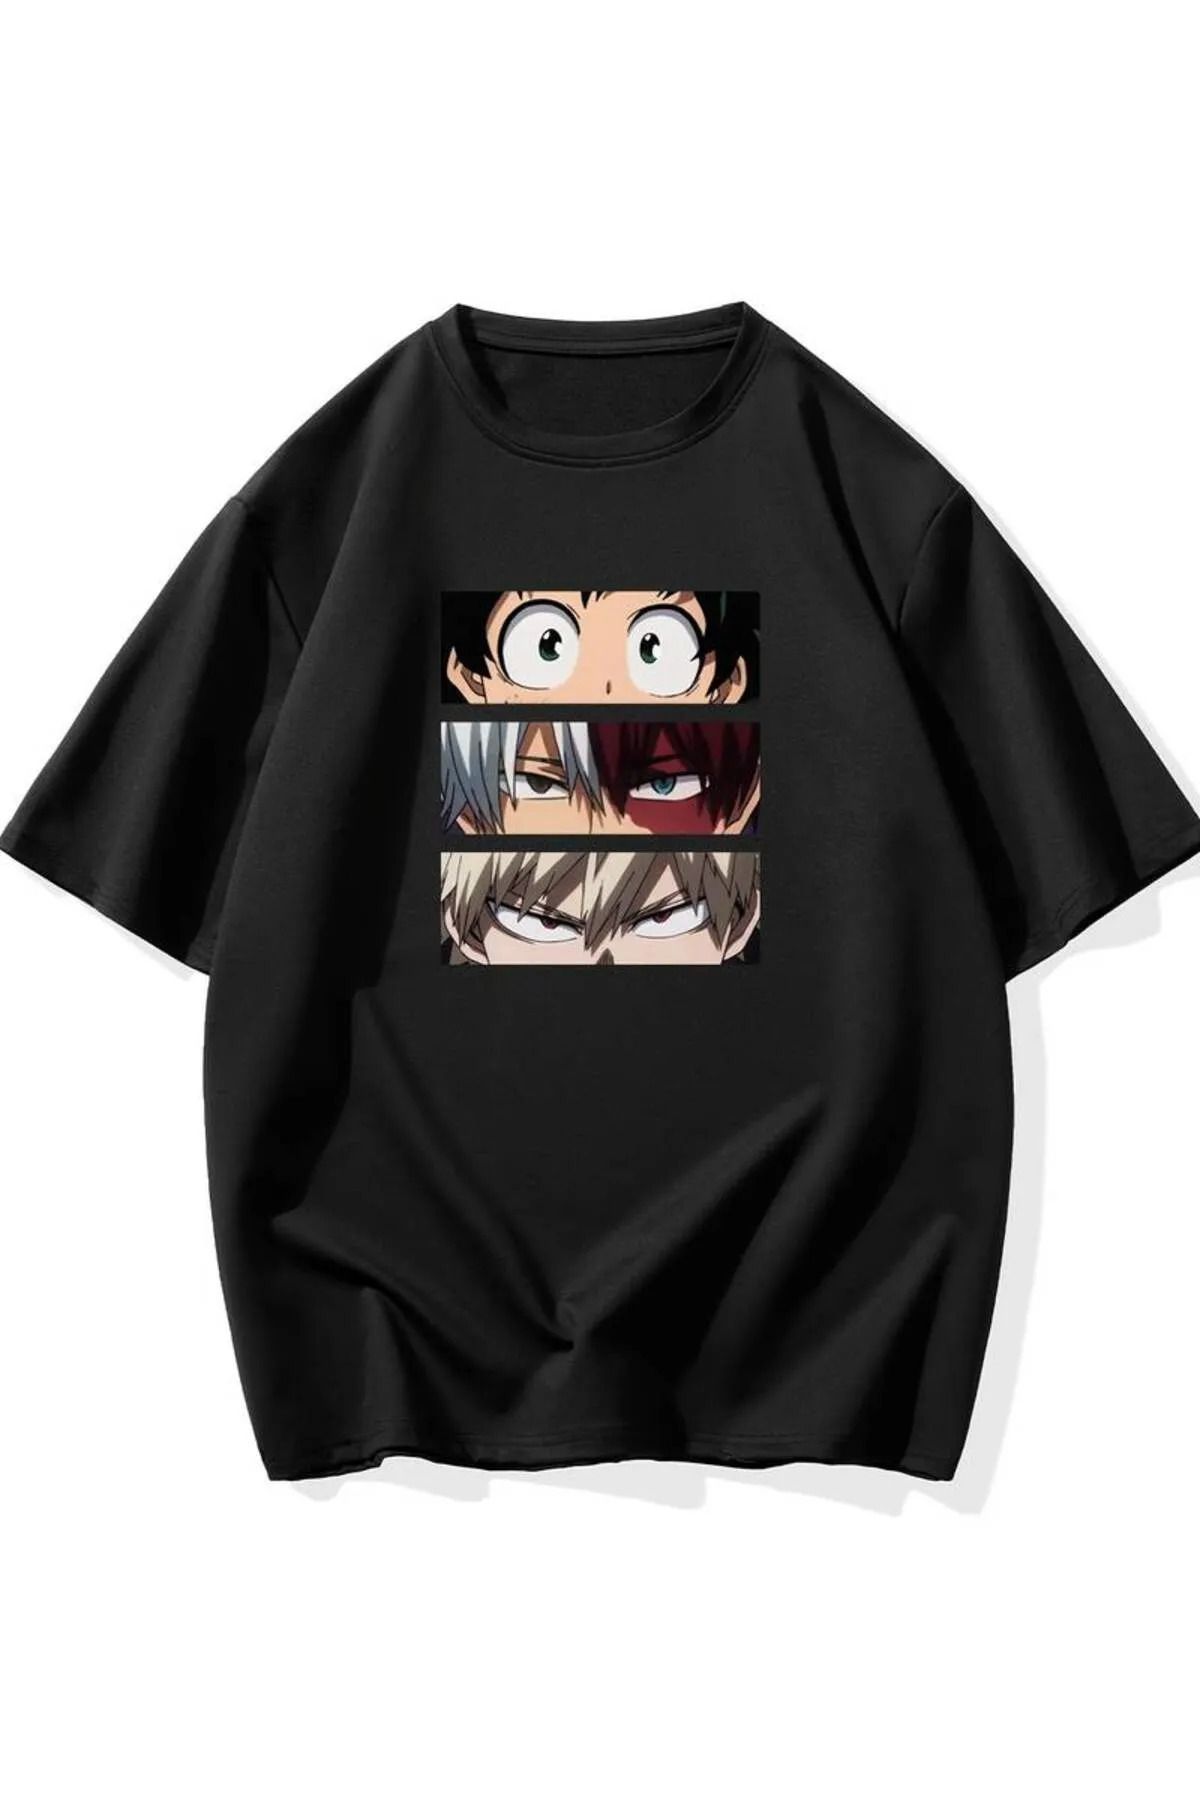 oneagılyazı Unisex Anime Baskılı Oversize T-Shirt